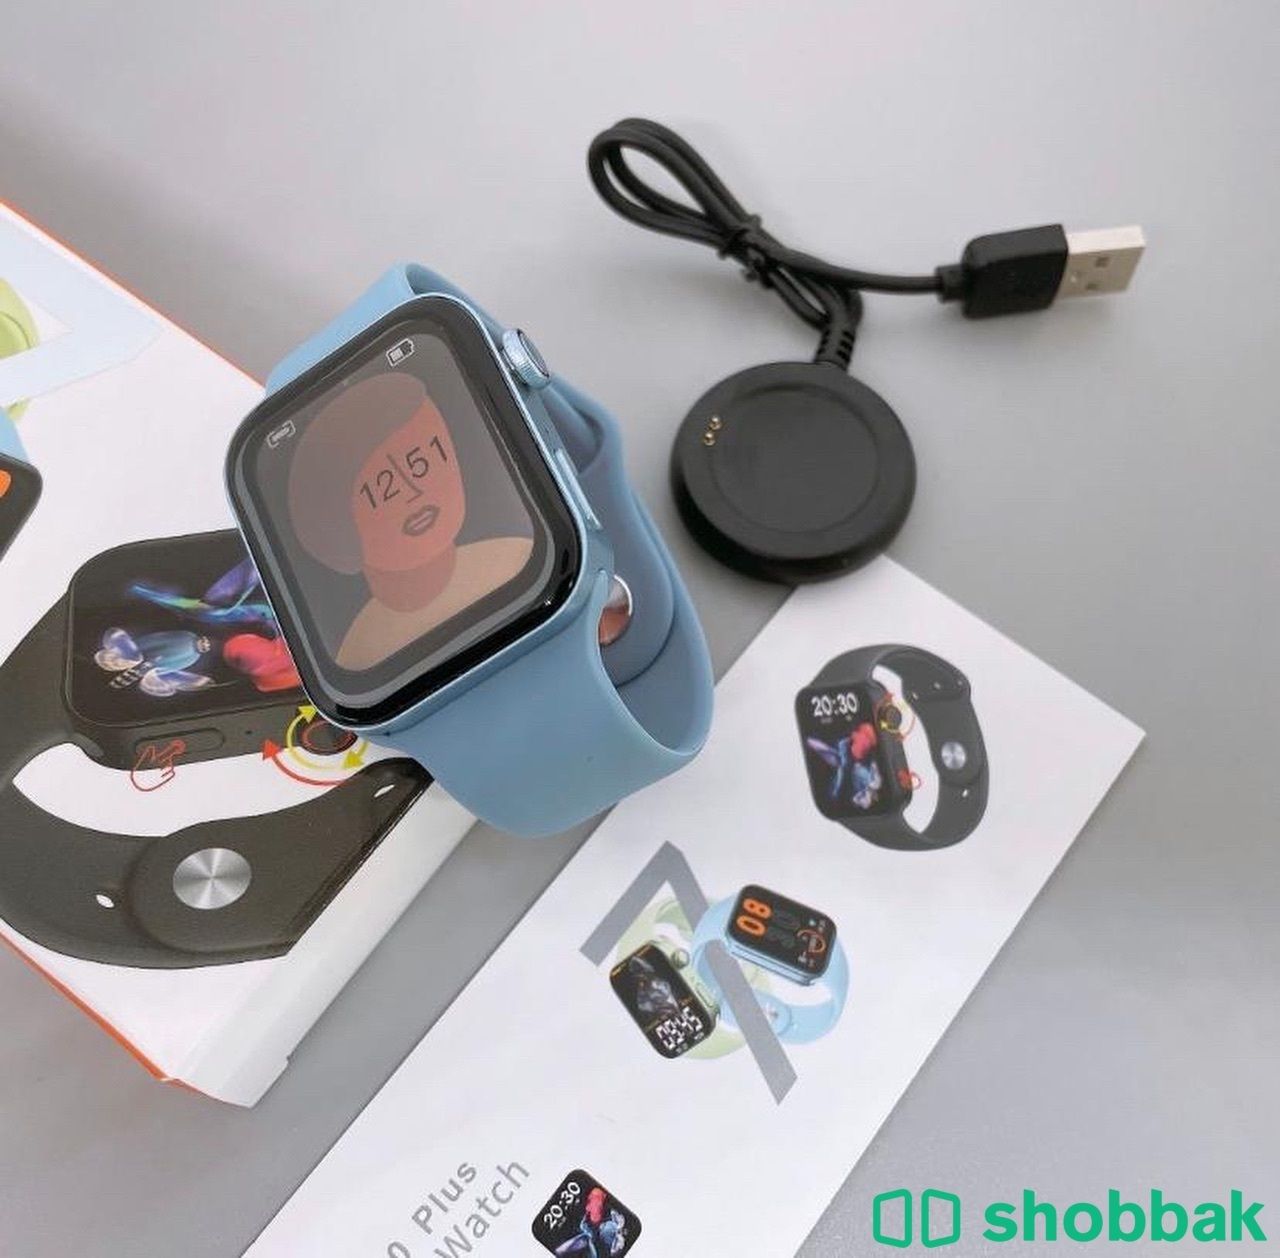 توصيل جميع مناطق المملكة 🚚 ساعة ذكية ⌚️من شركة T100 بلس استخدم شخصي او هدية لمن تحب Shobbak Saudi Arabia